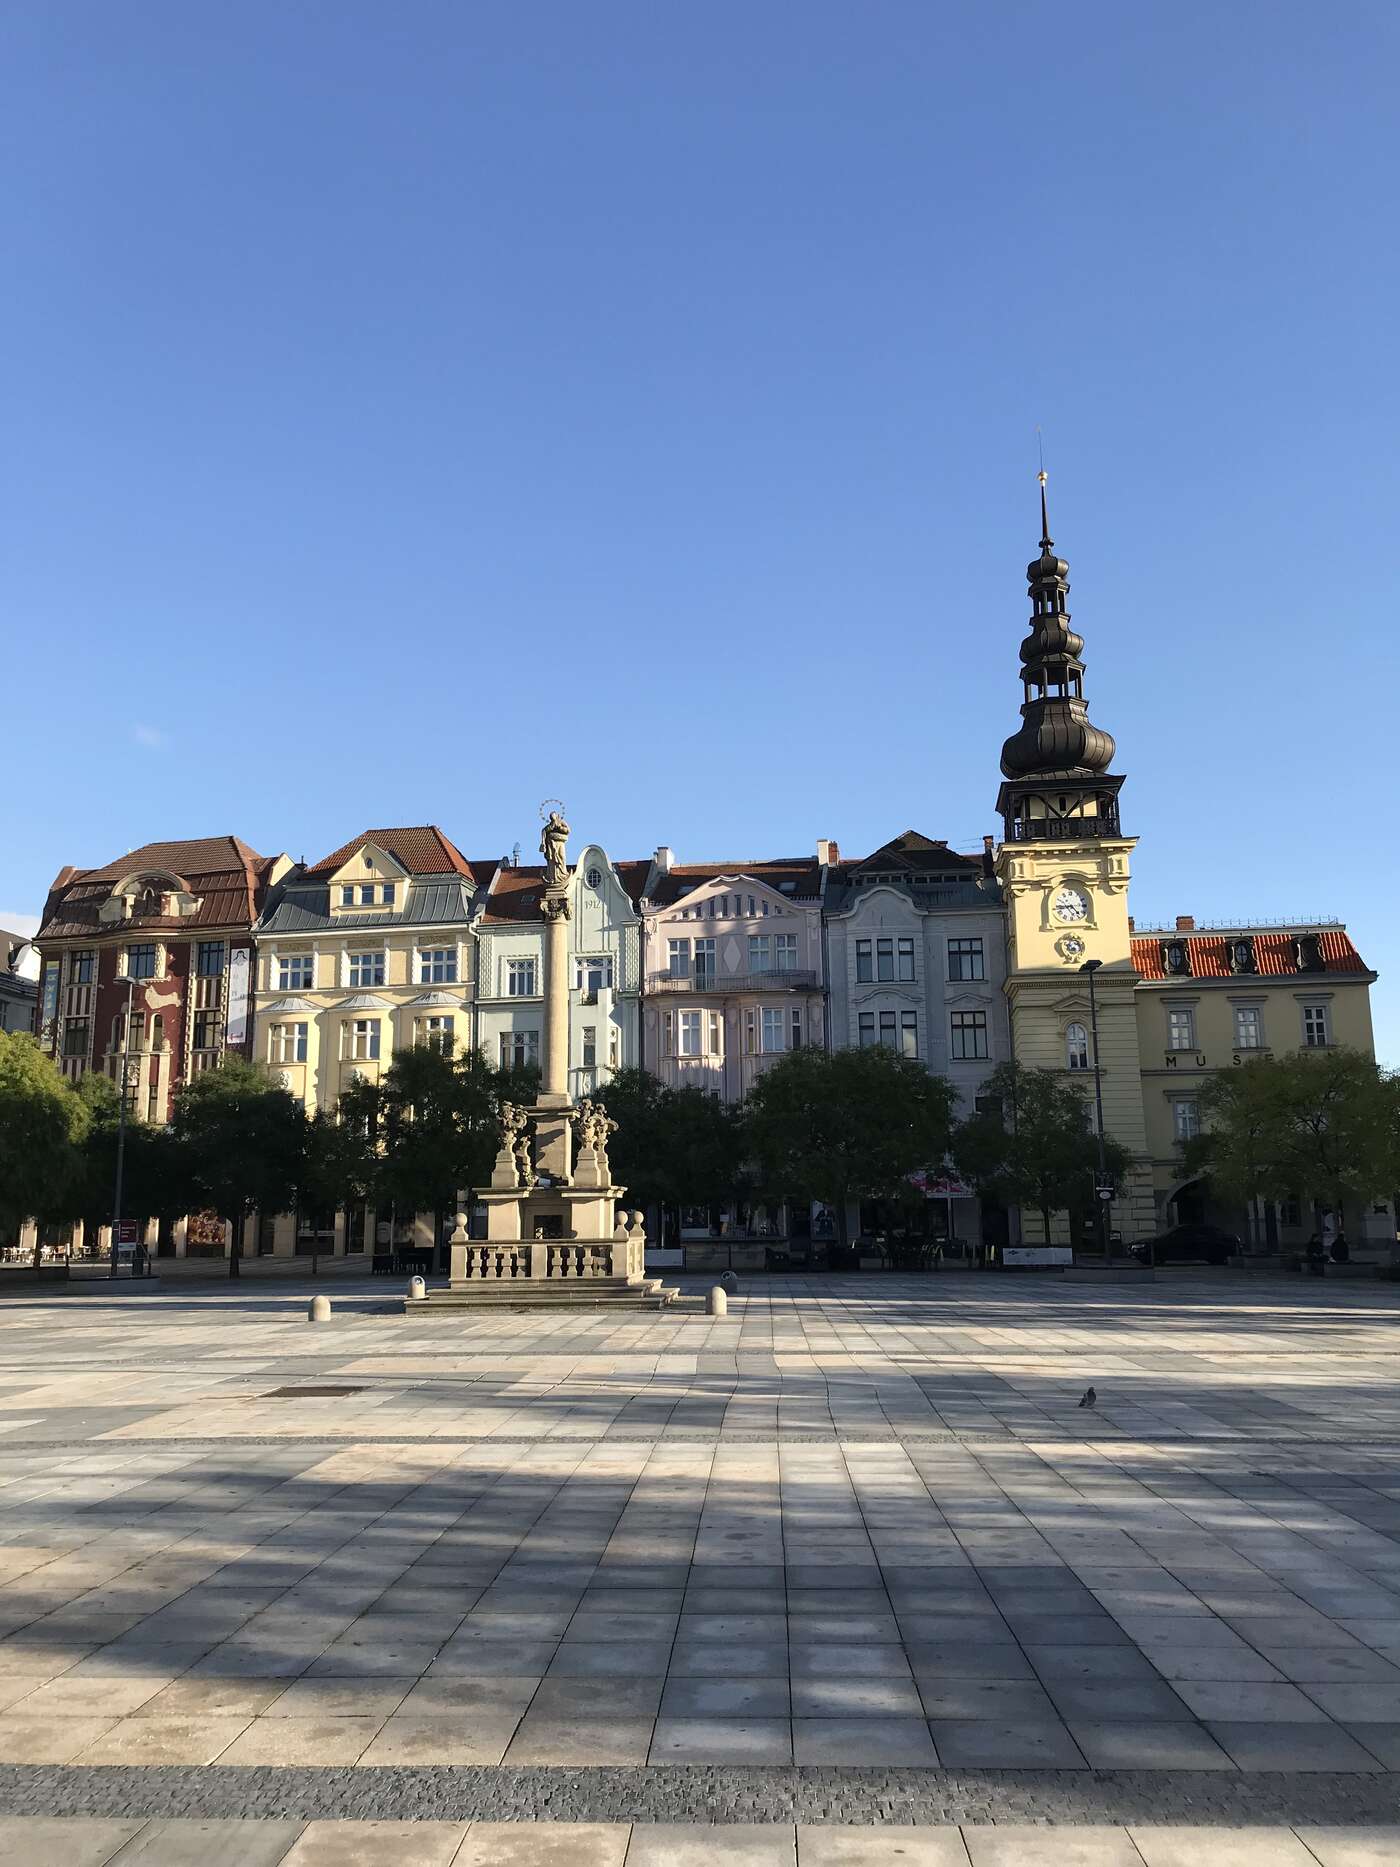 Ostrava's main square (with the old town hall) / La grande place principale d'Ostrava (avec l'ancien Hôtel de Ville)